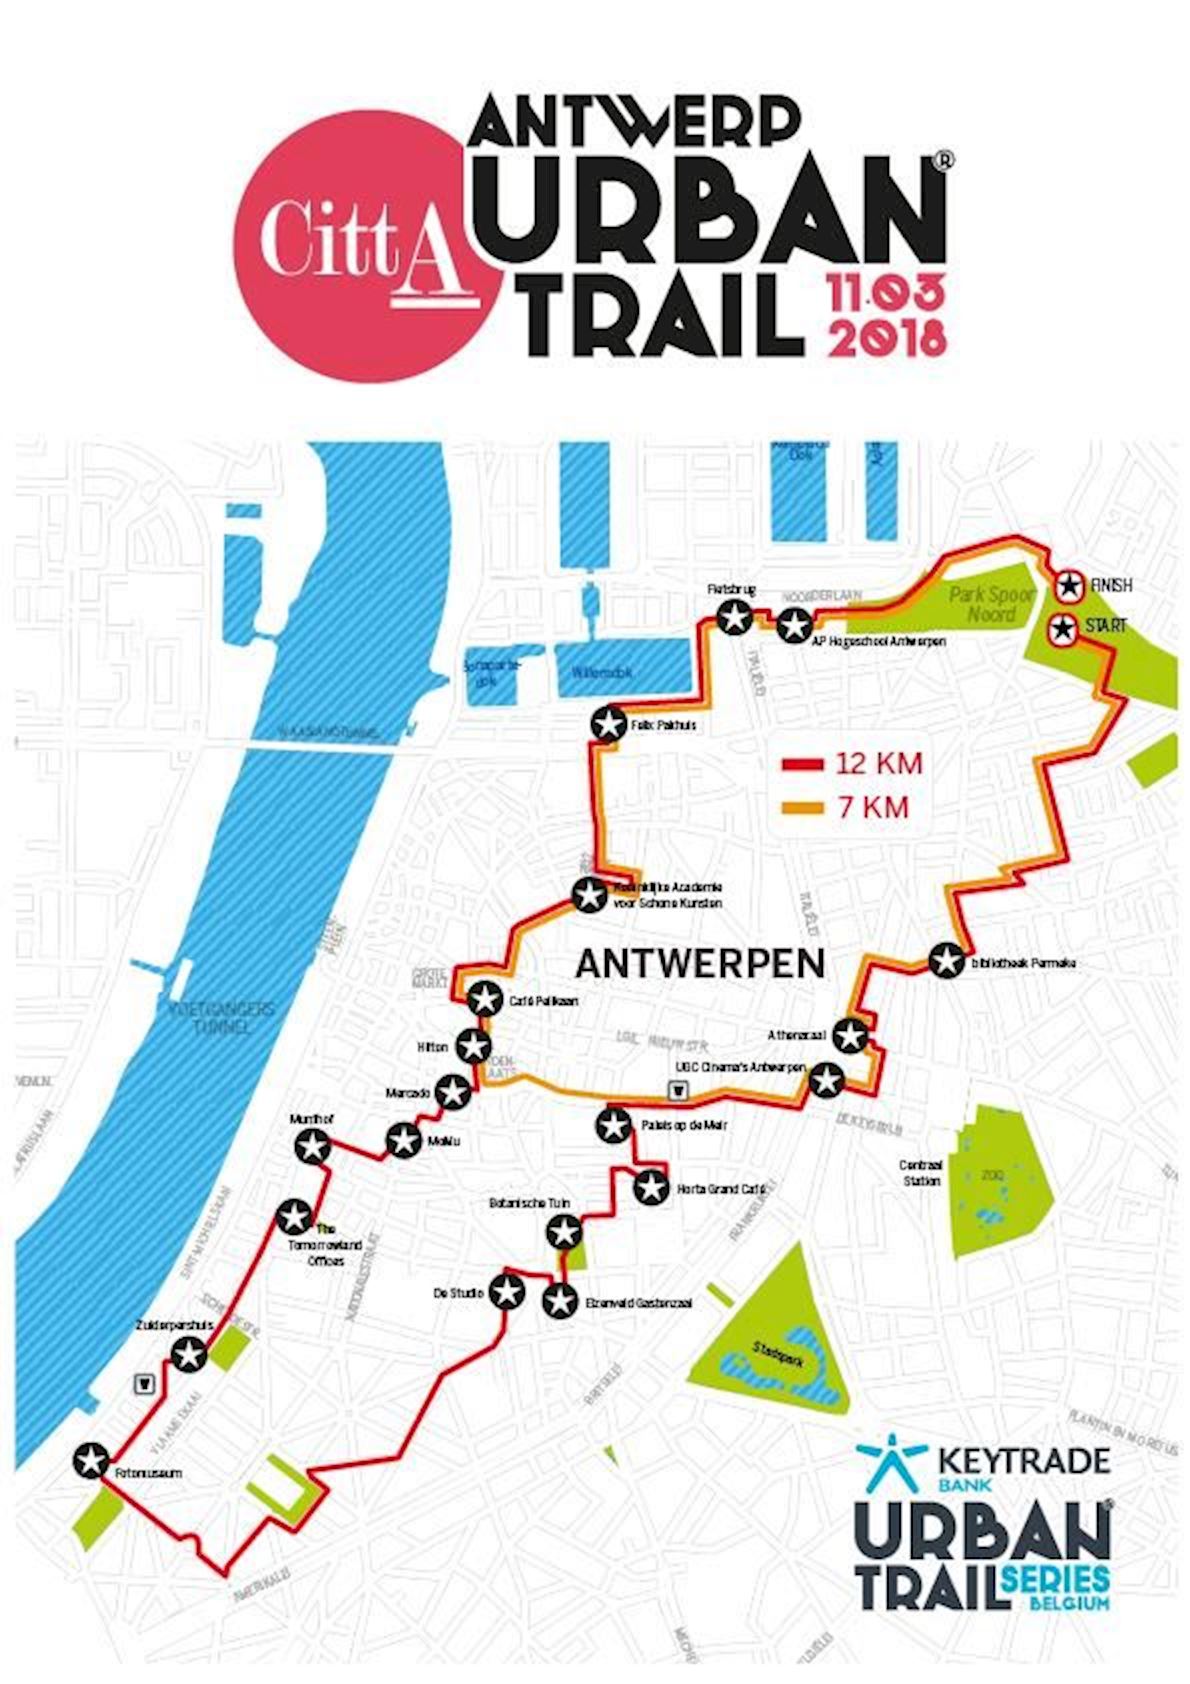 Antwerp Urban Trail MAPA DEL RECORRIDO DE